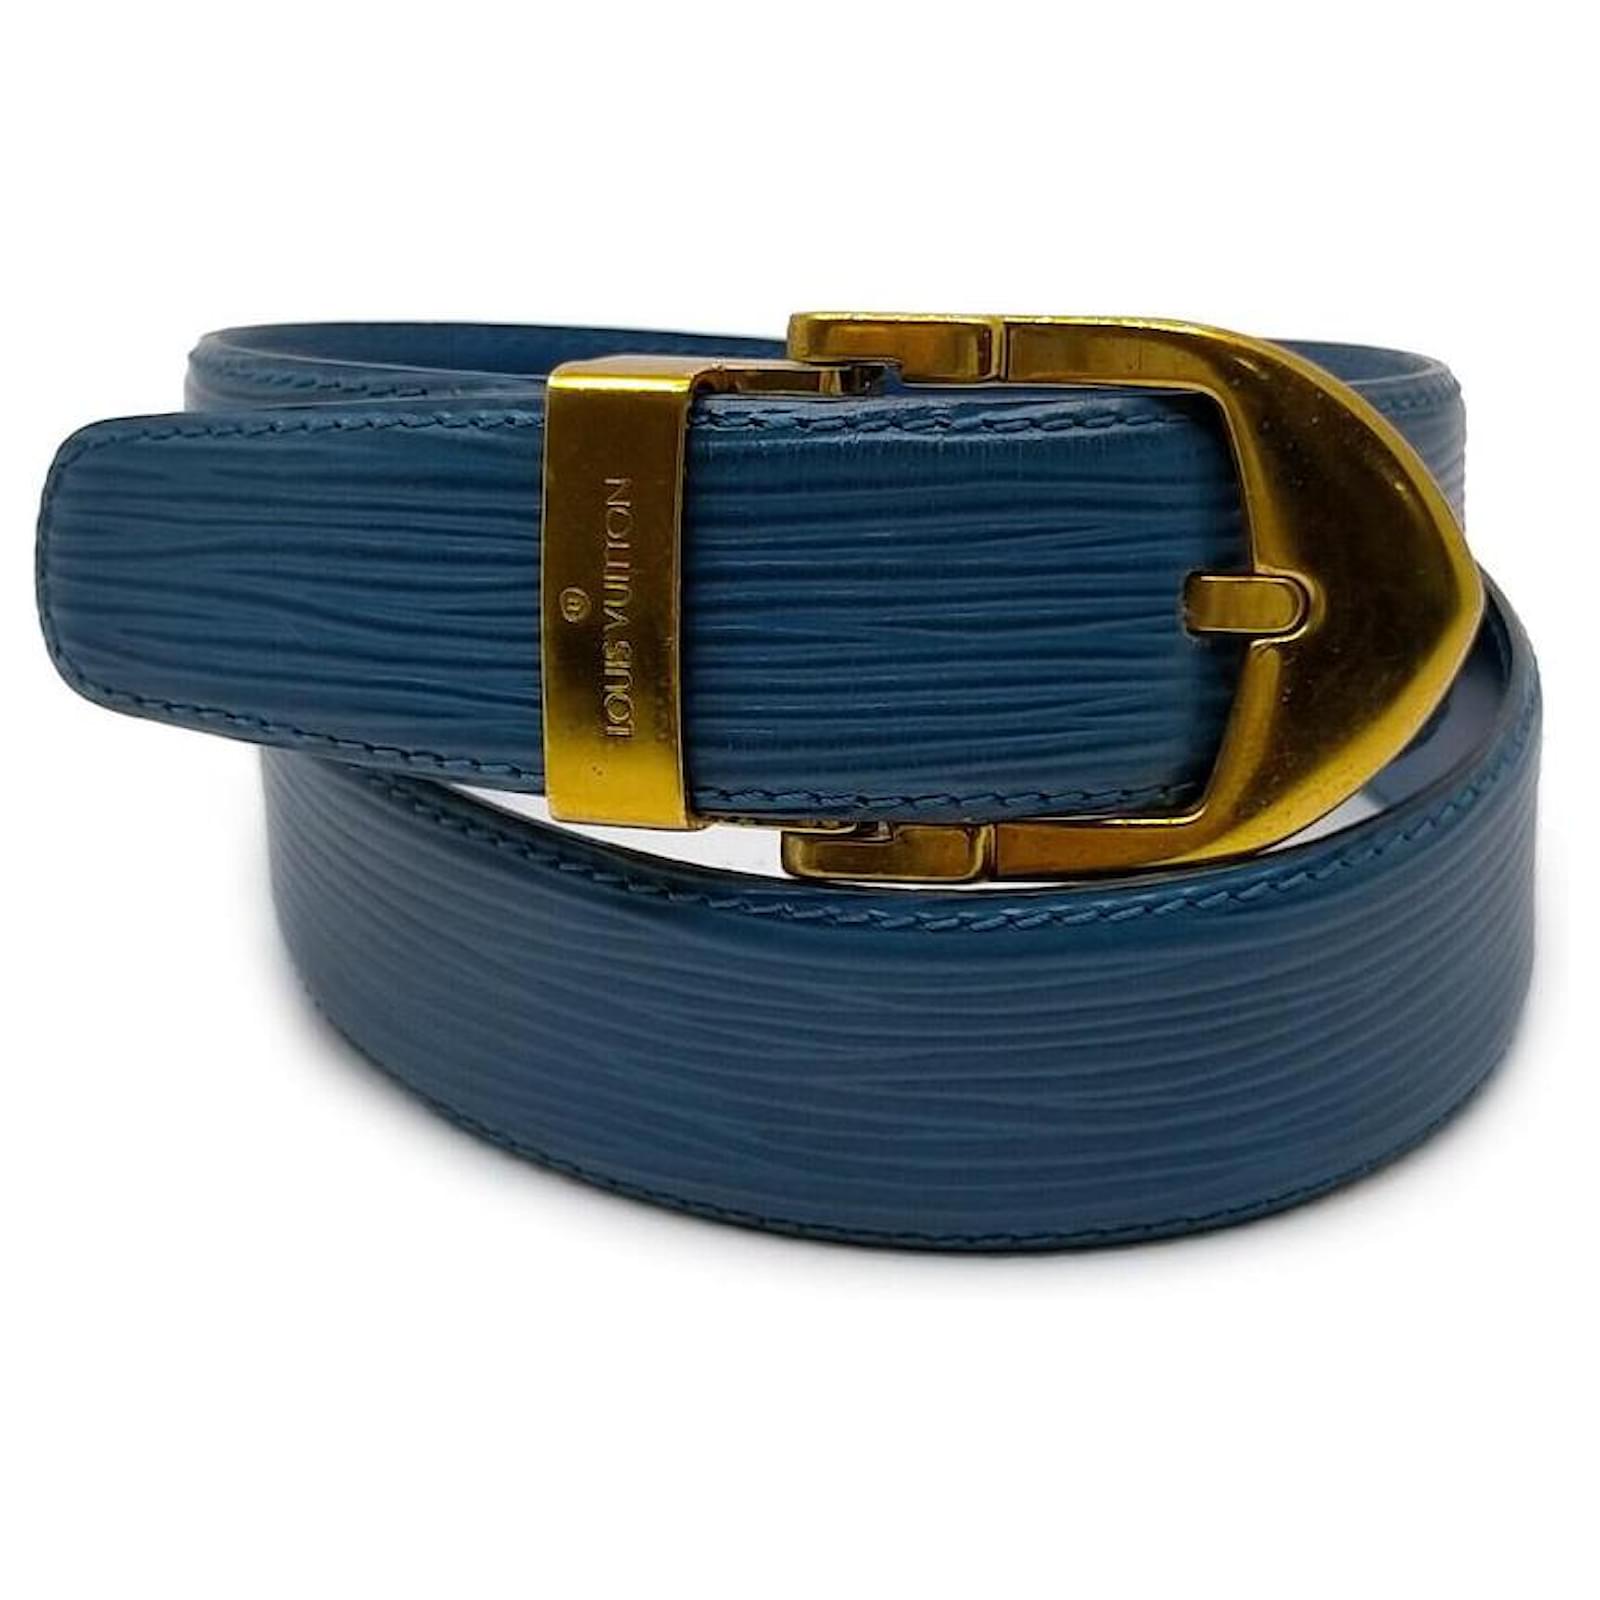 Cinture Louis vuitton in Pelle Blu taglia 100 cm - 24652836